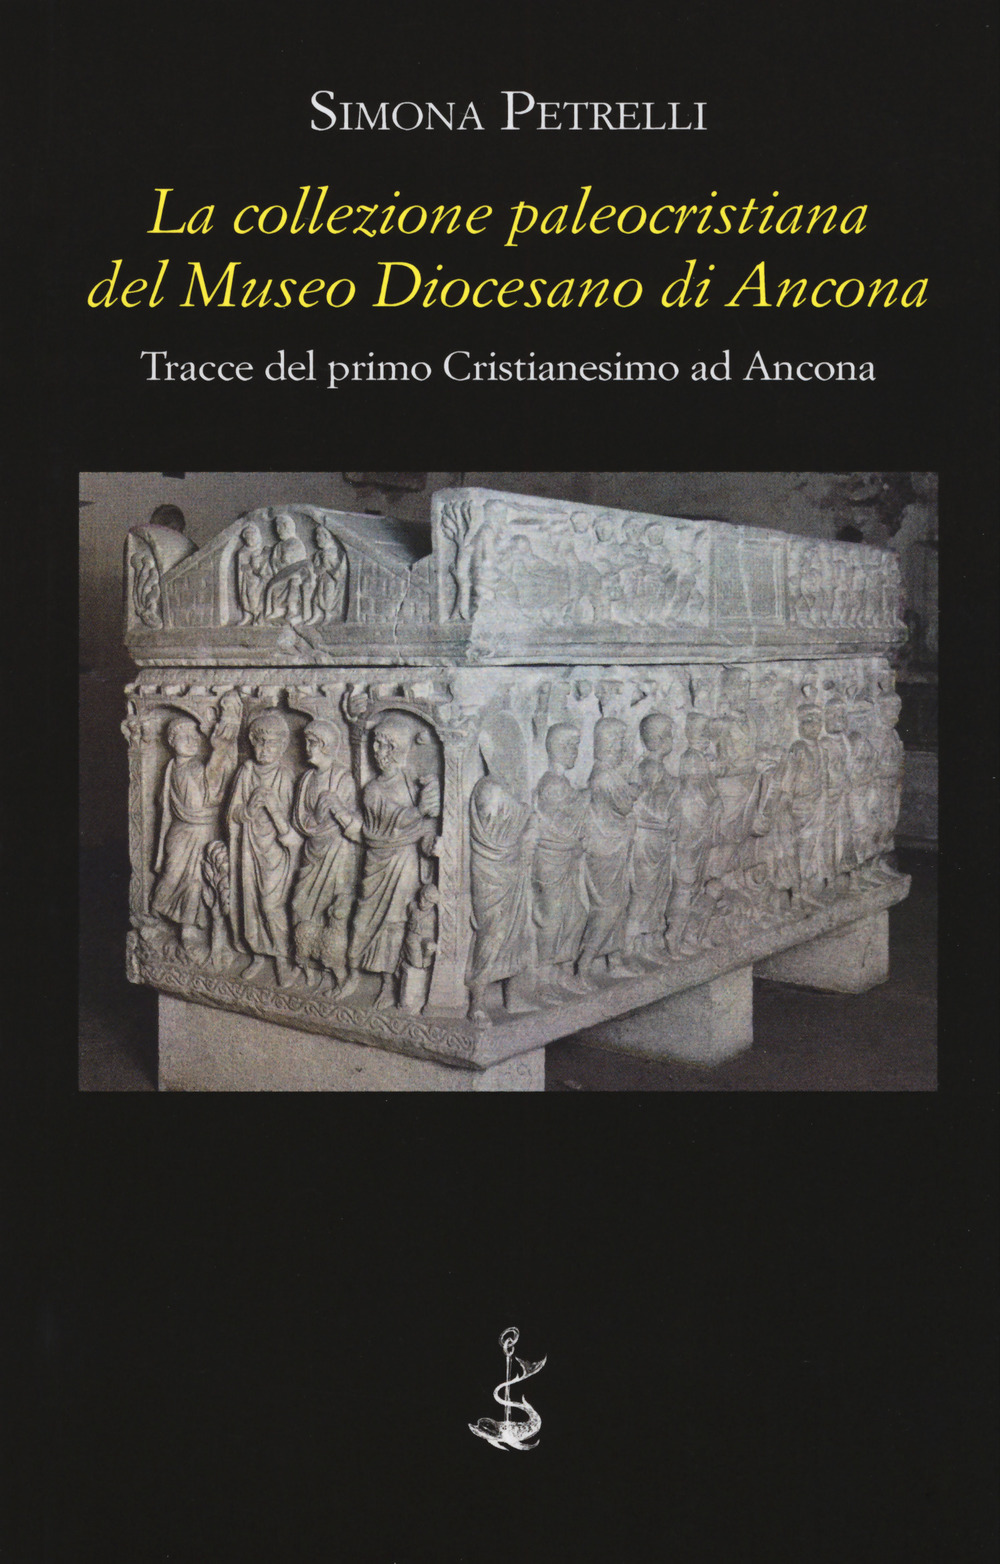 La collezione paleocristiana del Museo diocesano di Ancona. Tracce del primo cristianesimo ad Ancona